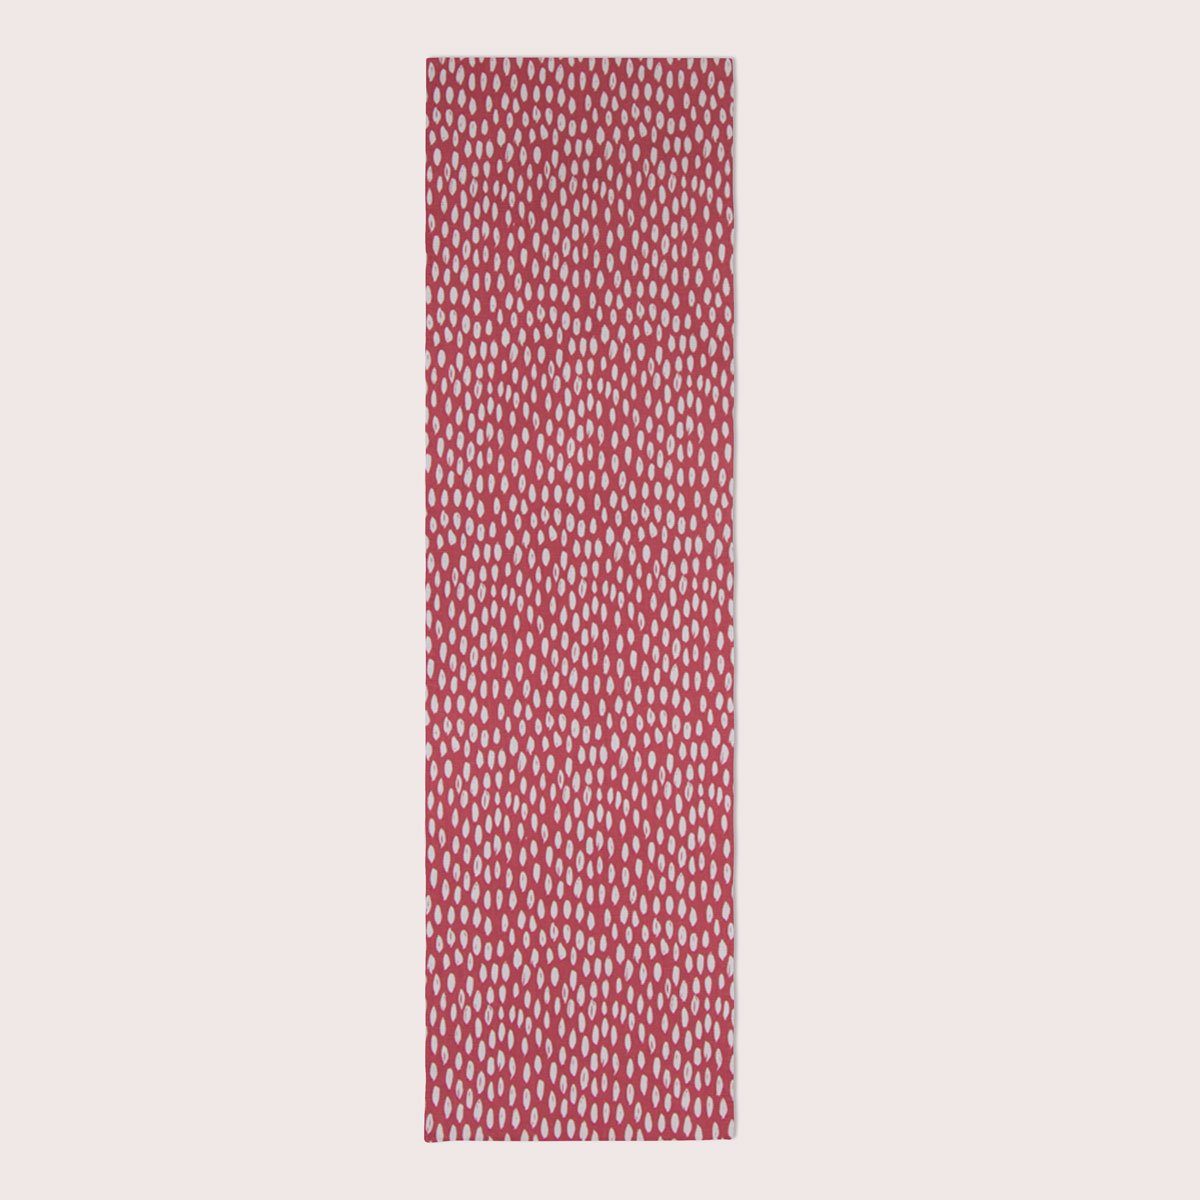 Klecksen SCHÖNER mit rot LEBEN. LEBEN. handmade 40x160cm, SCHÖNER Tropfen Tischläufer Tischläufer